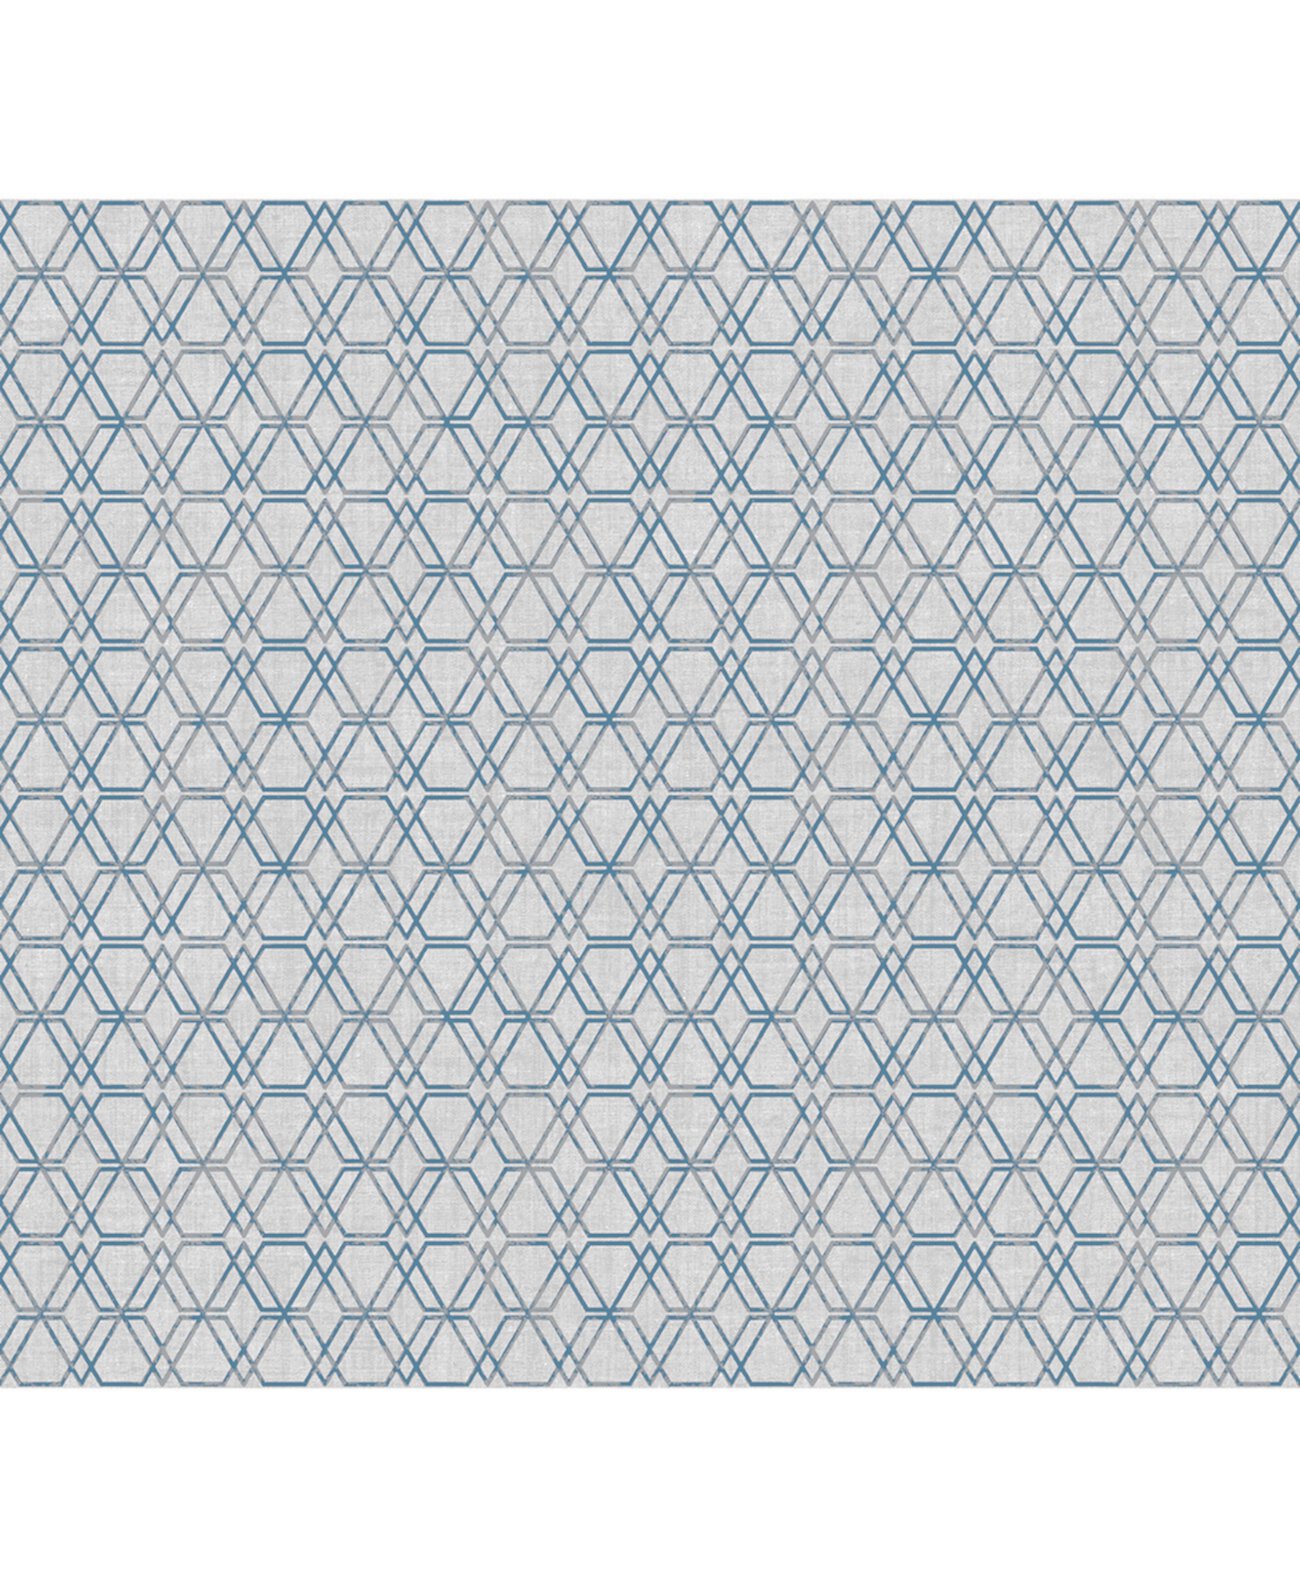 27 "x 396" обои Esagono с геометрическим рисунком Sirpi